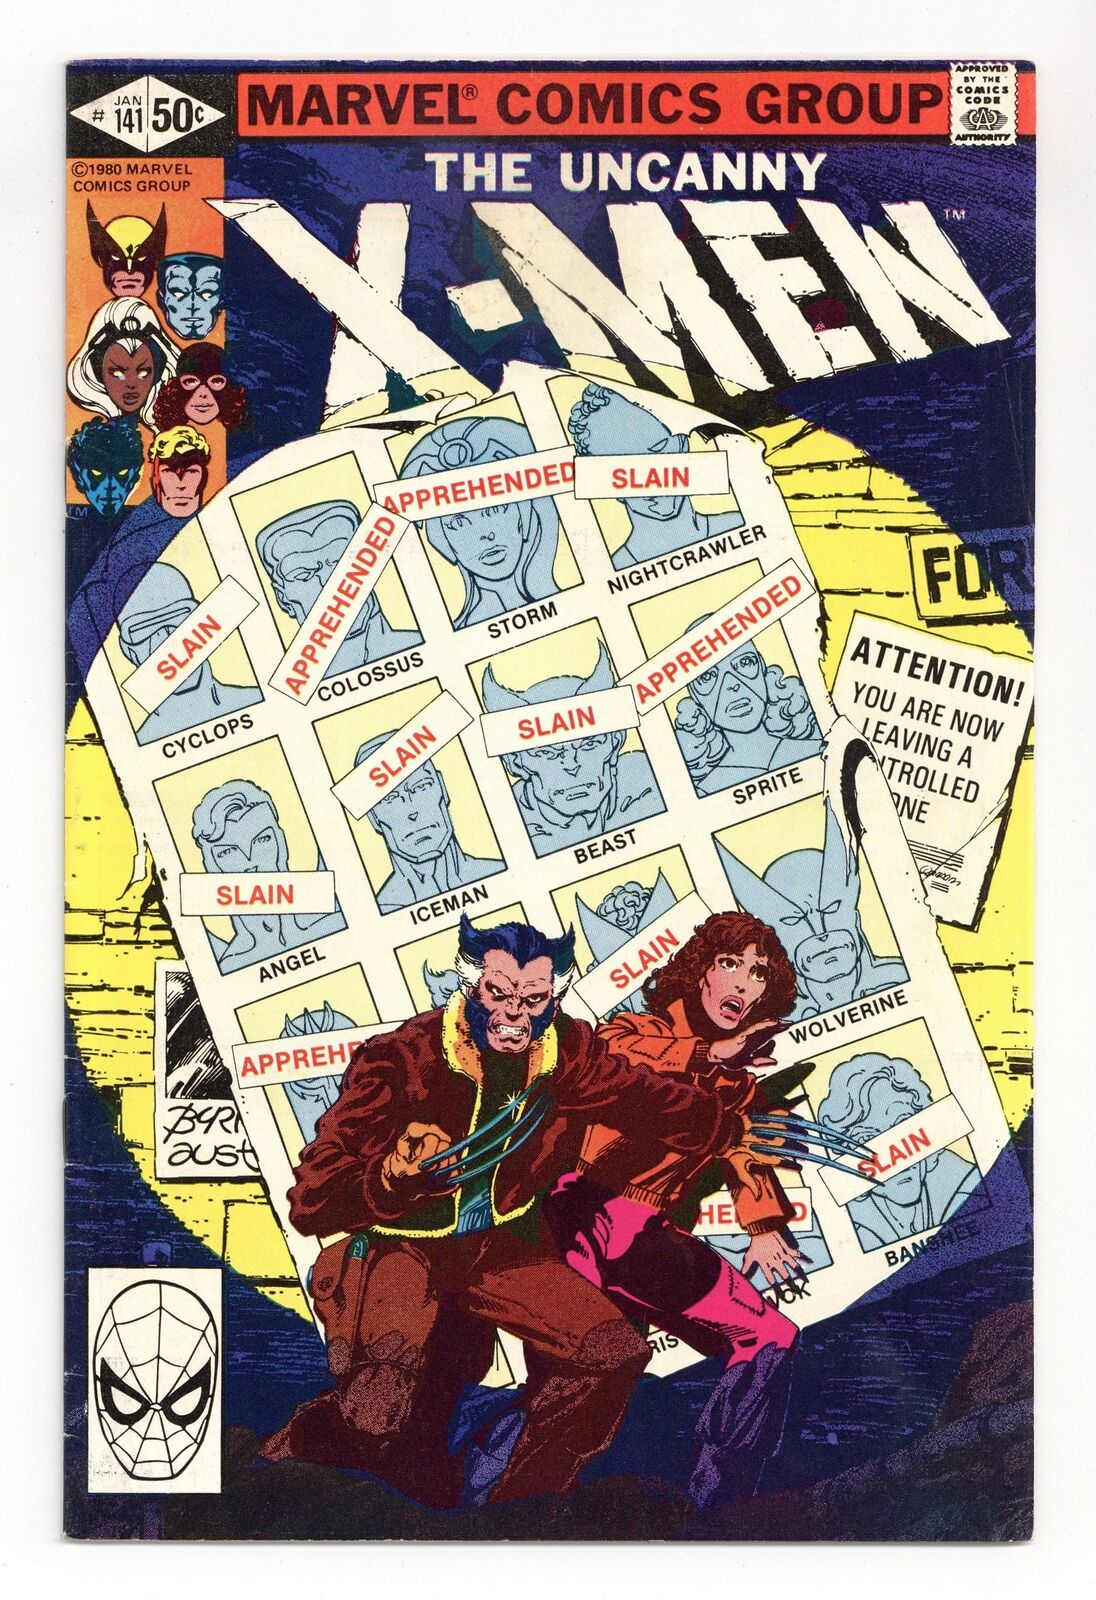 Uncanny X-Men #141D Direct Variant VG/FN 5.0 1981 1st app. Rachel Summers